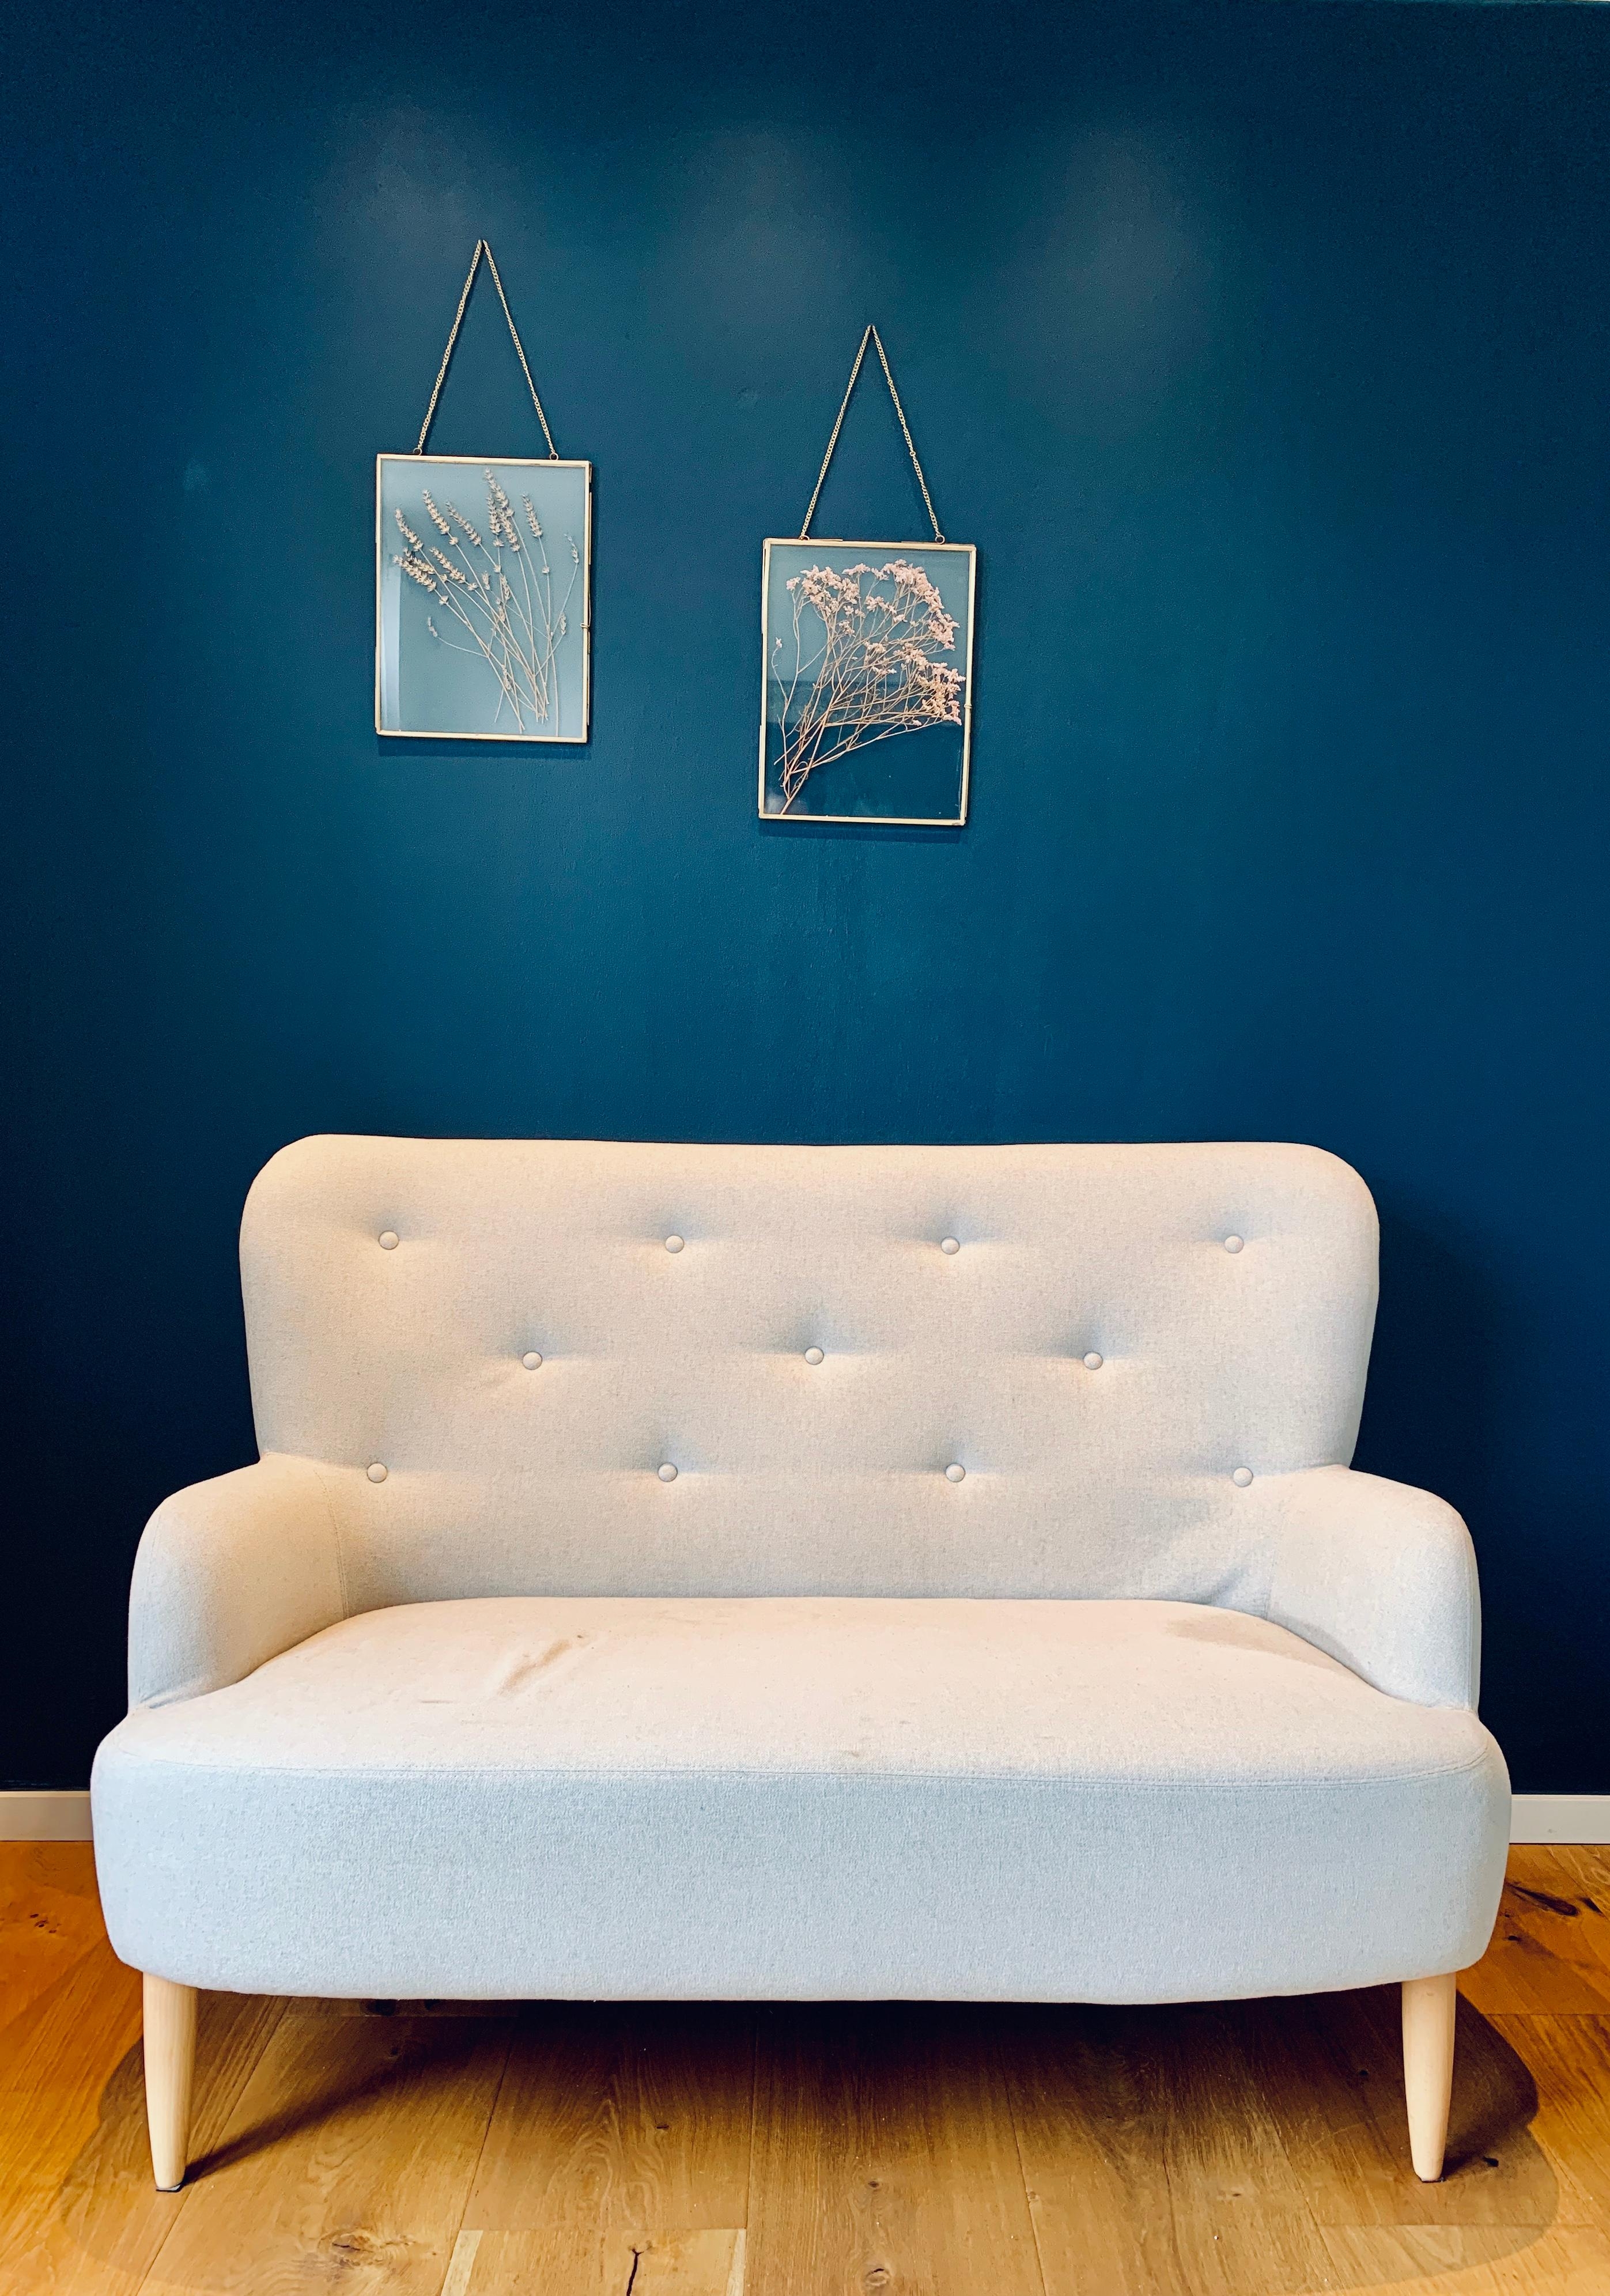 Wir haben verschiedene Wände in #hagueblue und lieben diesen Farbton #farrowandball #wandfarbe #blau #couch